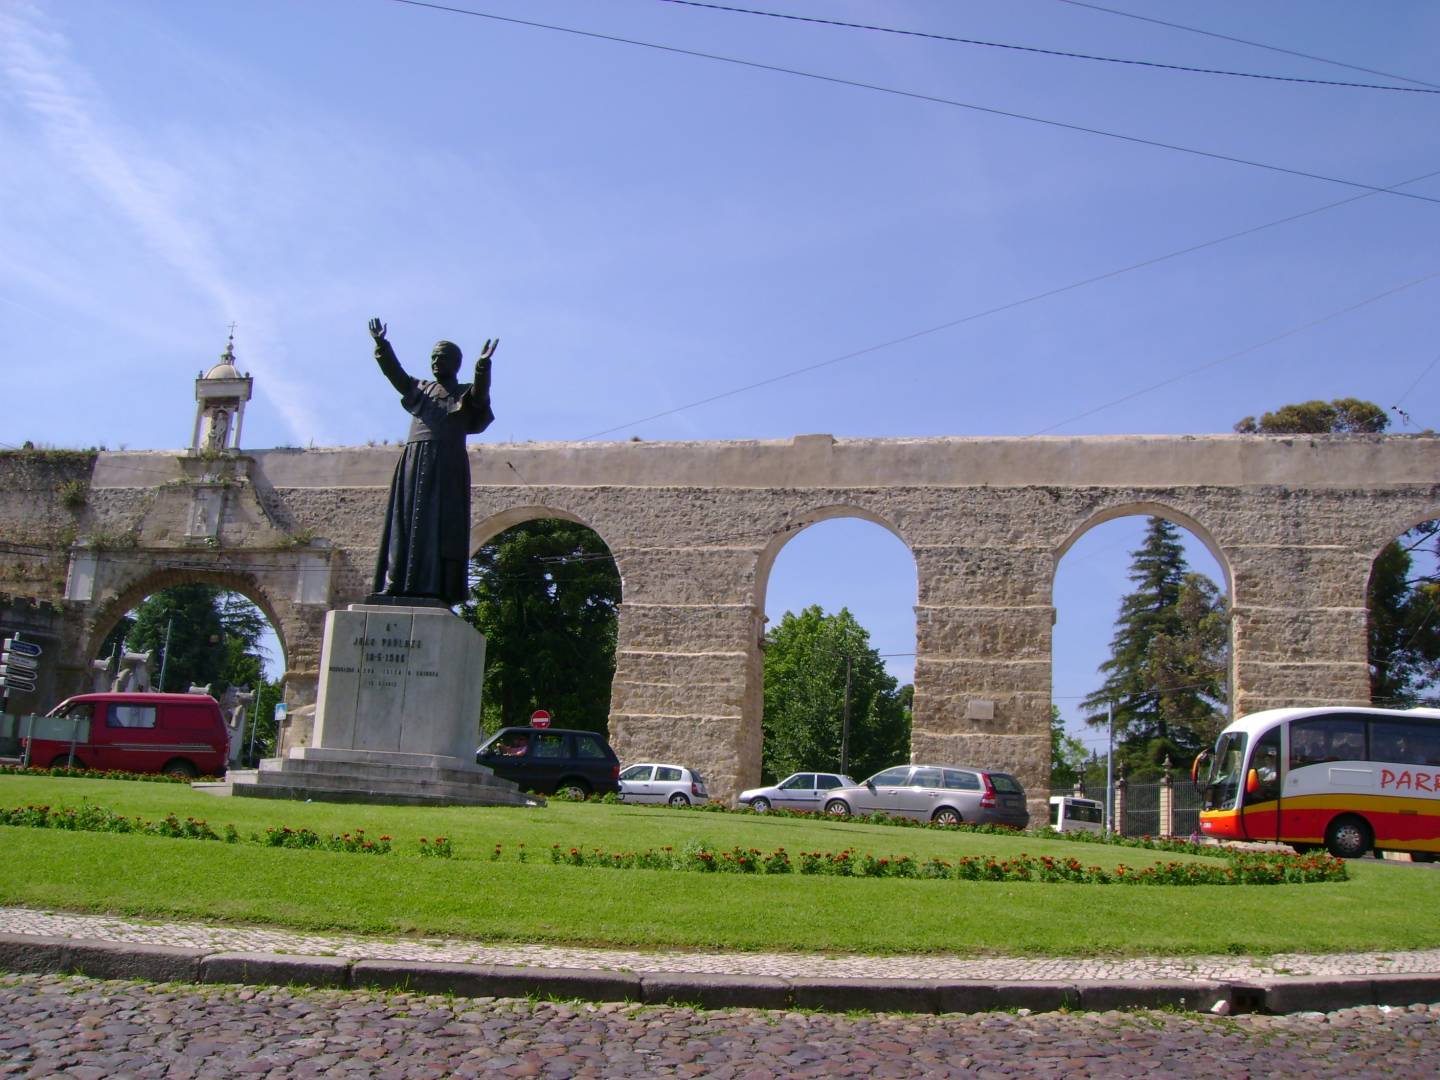 Aqueduto de São Sebastião / Arcos do Jardim